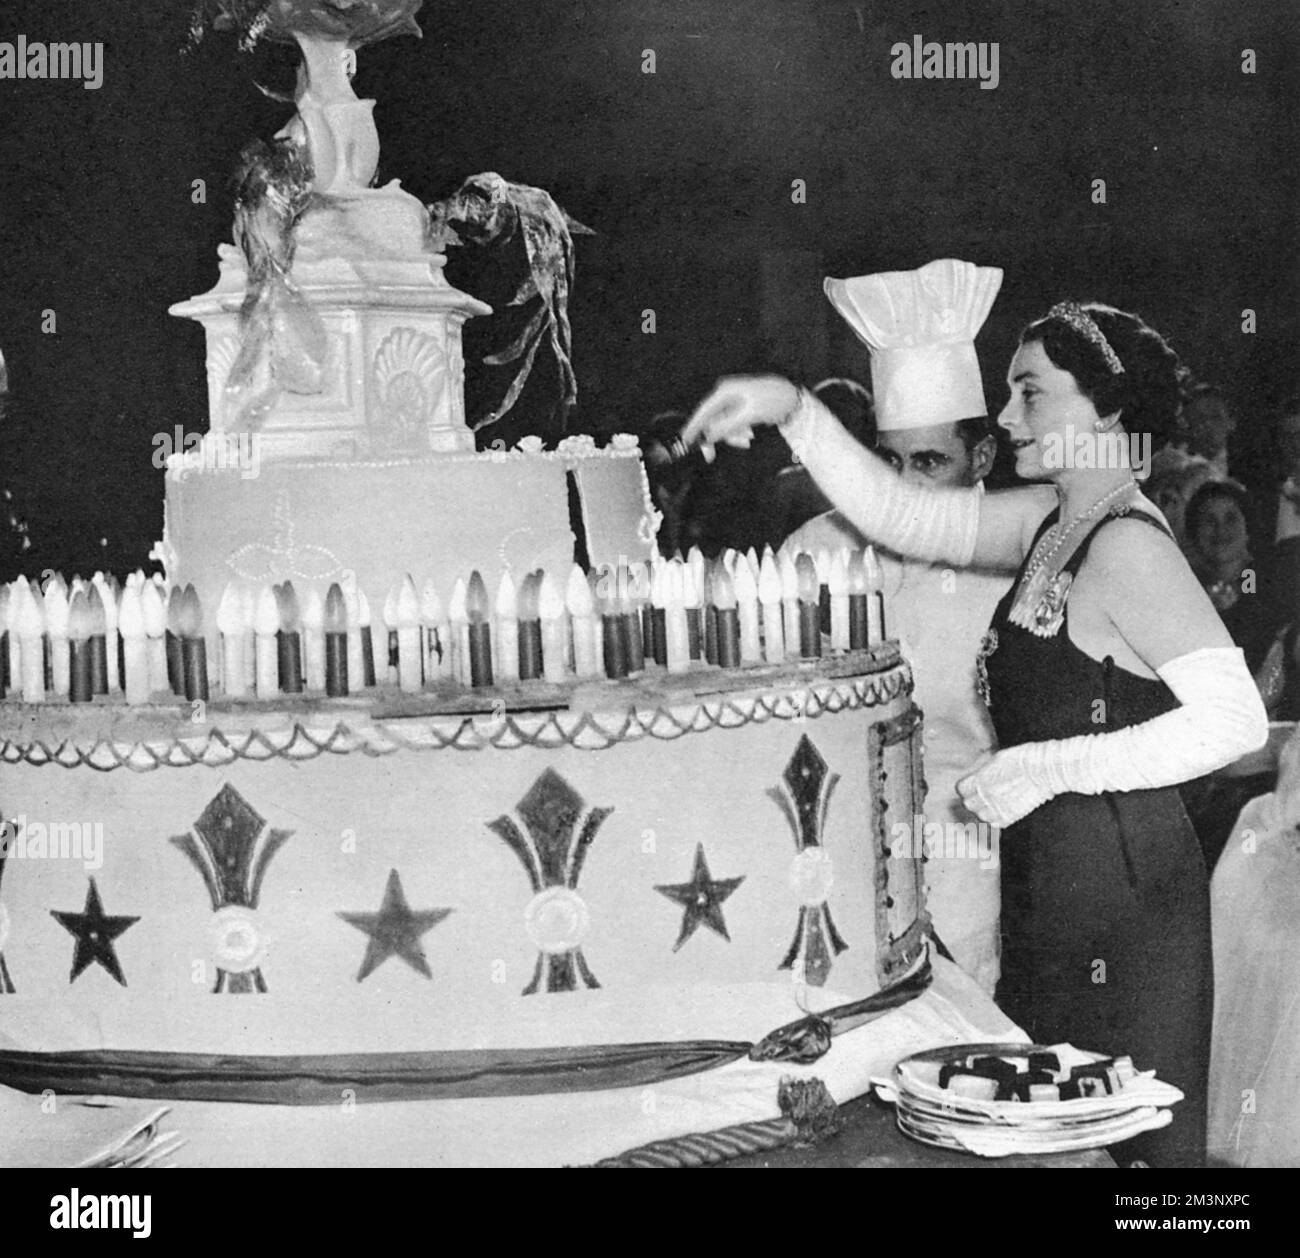 Die Herzogin von Gloucester (1901-2004) schneidet den riesigen Kuchen mit 194 elektrischen Kerzen, die die Anzahl der Jahre seit der Geburt von Königin Charlotte an dem Ball darstellen, der nach ihr benannt wurde. Queen Charlotte's Ball, zu Ehren der Frau von König George III. Gehalten und 1925 wiederbelebt, um Spenden für die gleichnamige Entbindungsklinik zu sammeln, war einer der Höhepunkte der Londoner Saison für eine Debütantin. Alle Mädchen waren weiß gekleidet und tauchten in einen sorgfältig choreographierten Knicks ein, als der Kuchen geschnitten wurde. Es gab anscheinend einen ziemlichen Skrum, um danach ein Stück vom Kuchen zu bekommen! Datum Stockfoto